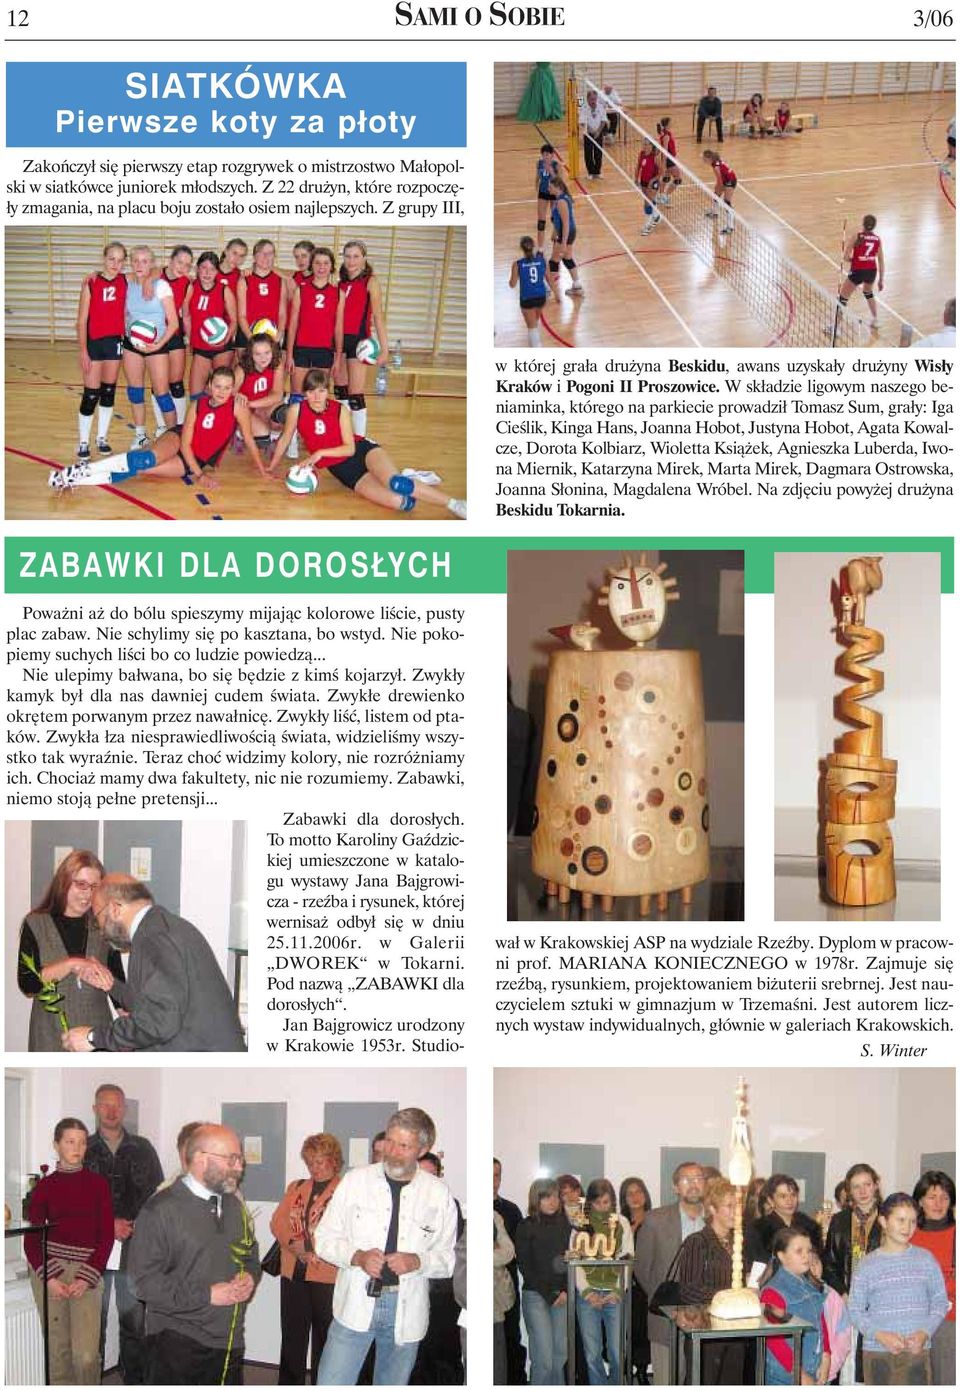 Z grupy III, ZABAWKI DLA DOROSŁYCH w której grała drużyna Beskidu, awans uzyskały drużyny Wisły Kraków i Pogoni II Proszowice.